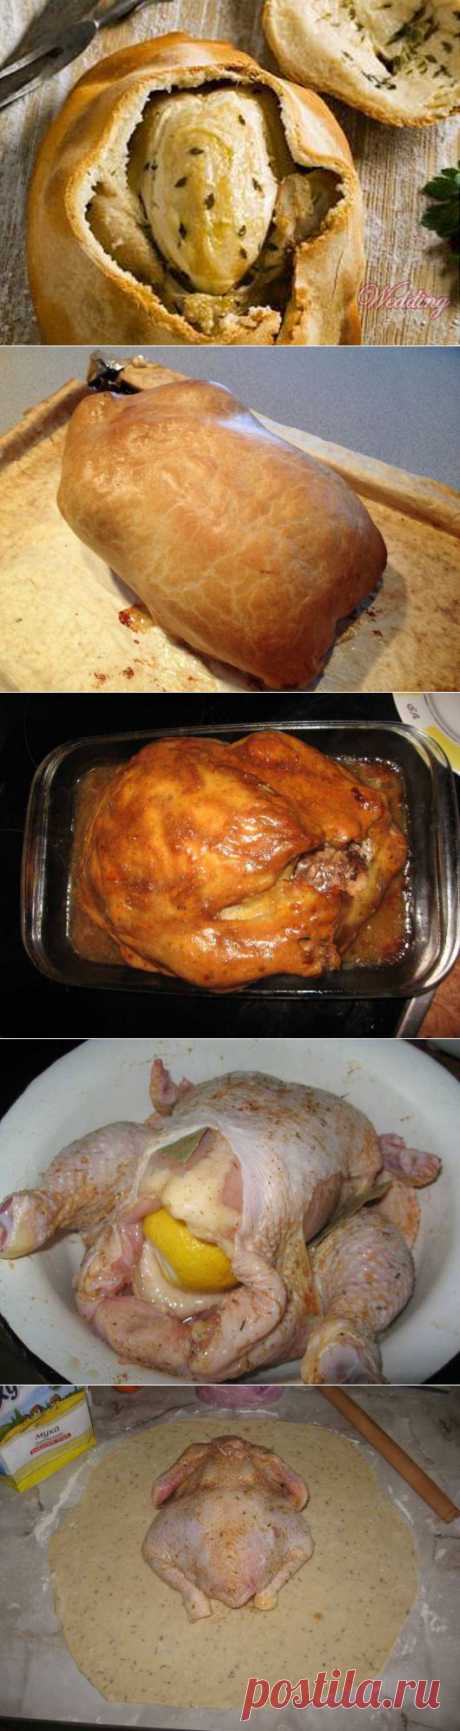 Как приготовить курицу в тесте | БУДЕТ ВКУСНО!